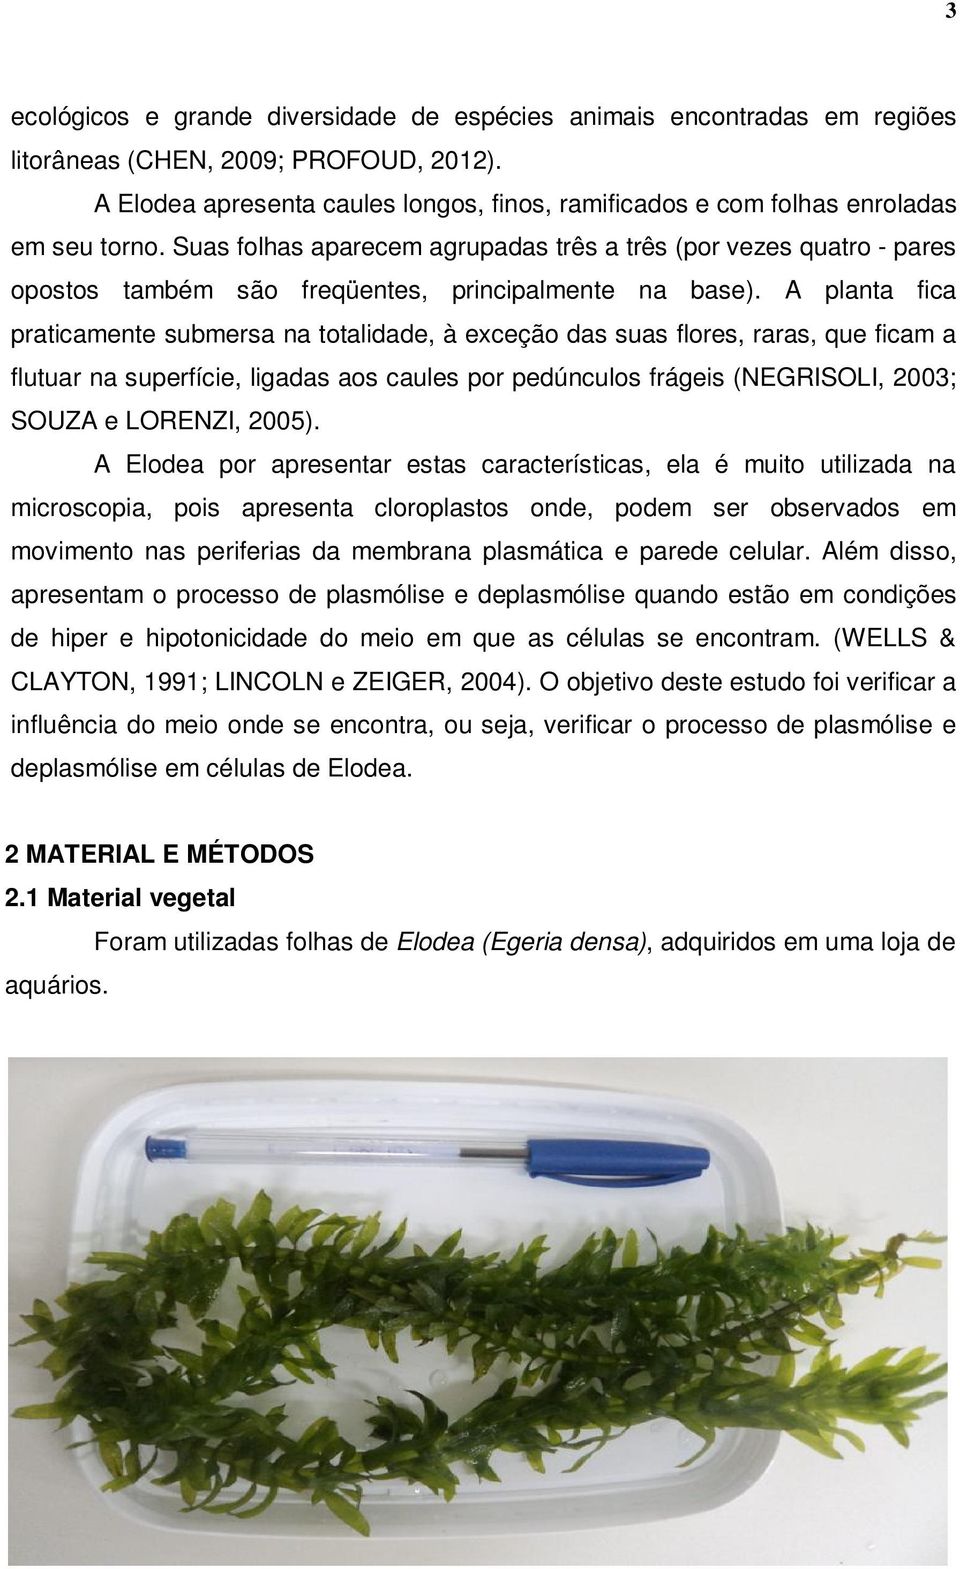 Mudancas No Metabolismo Celular De Egeria Densa Pdf Download Gratis